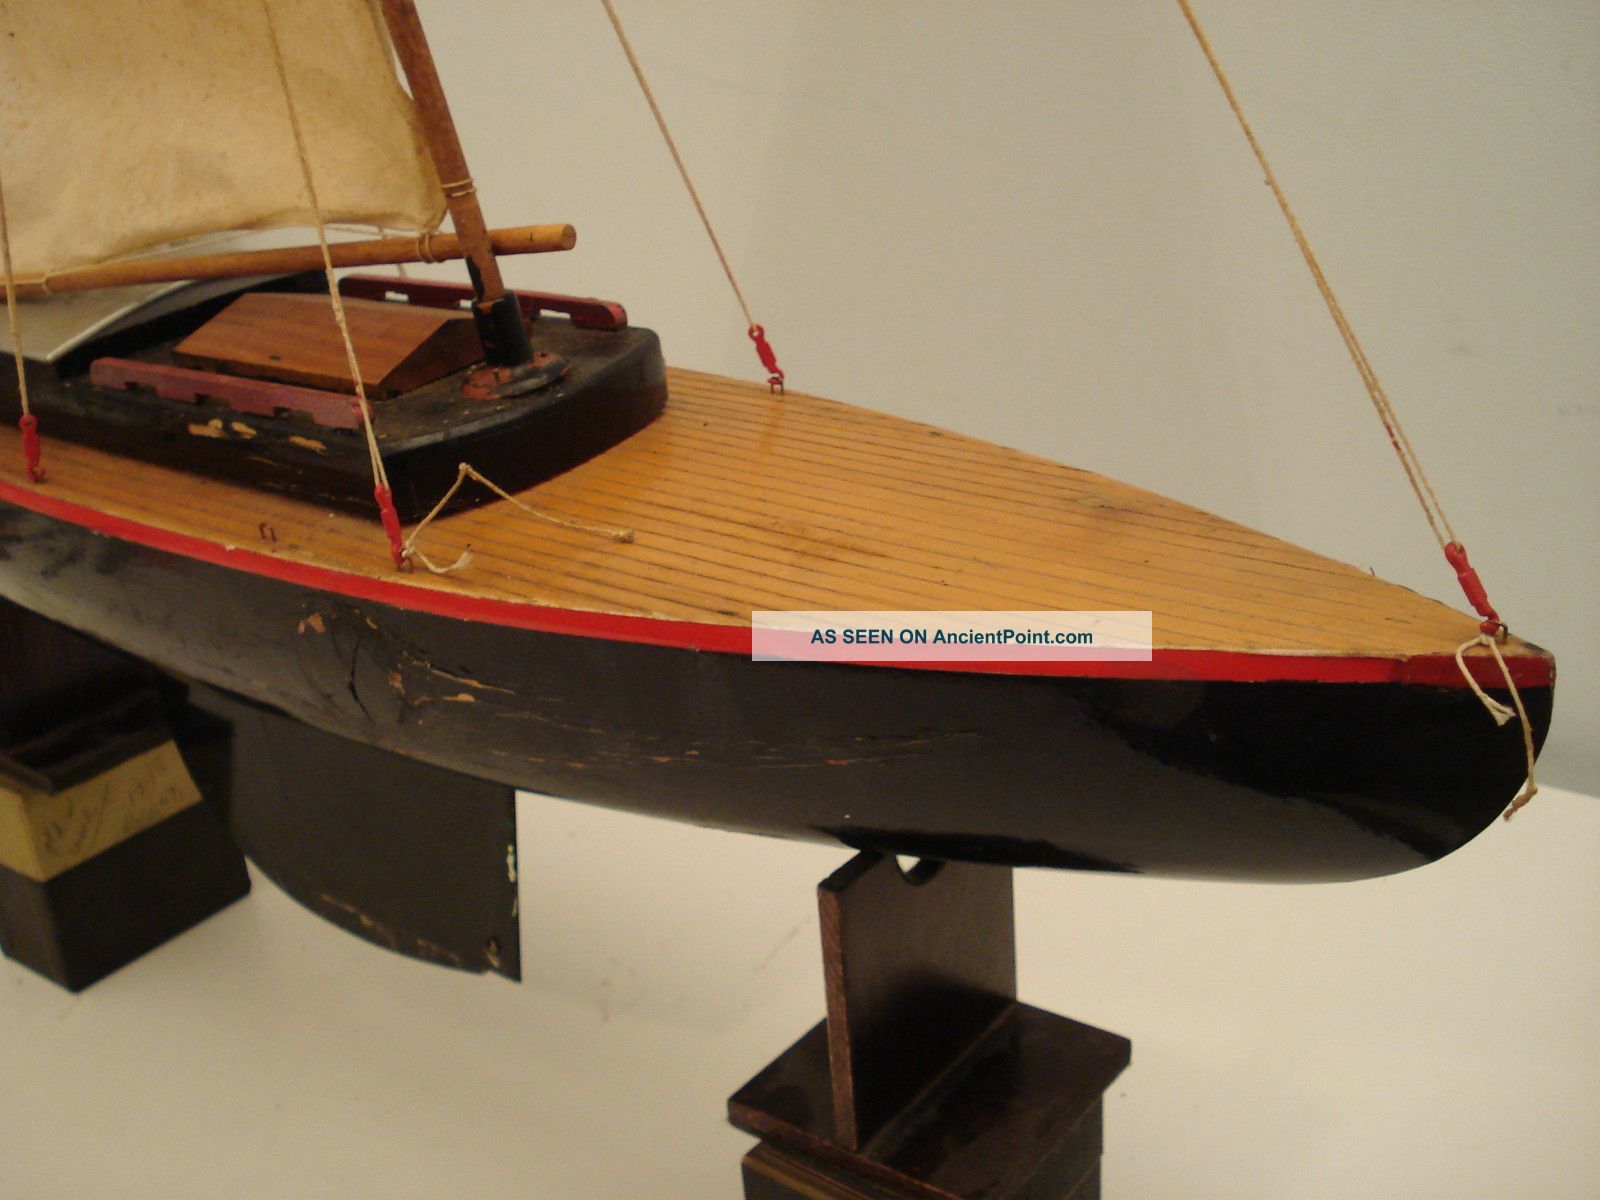 Chris craft boat for sale michigan quarterbacks, vintage model boat